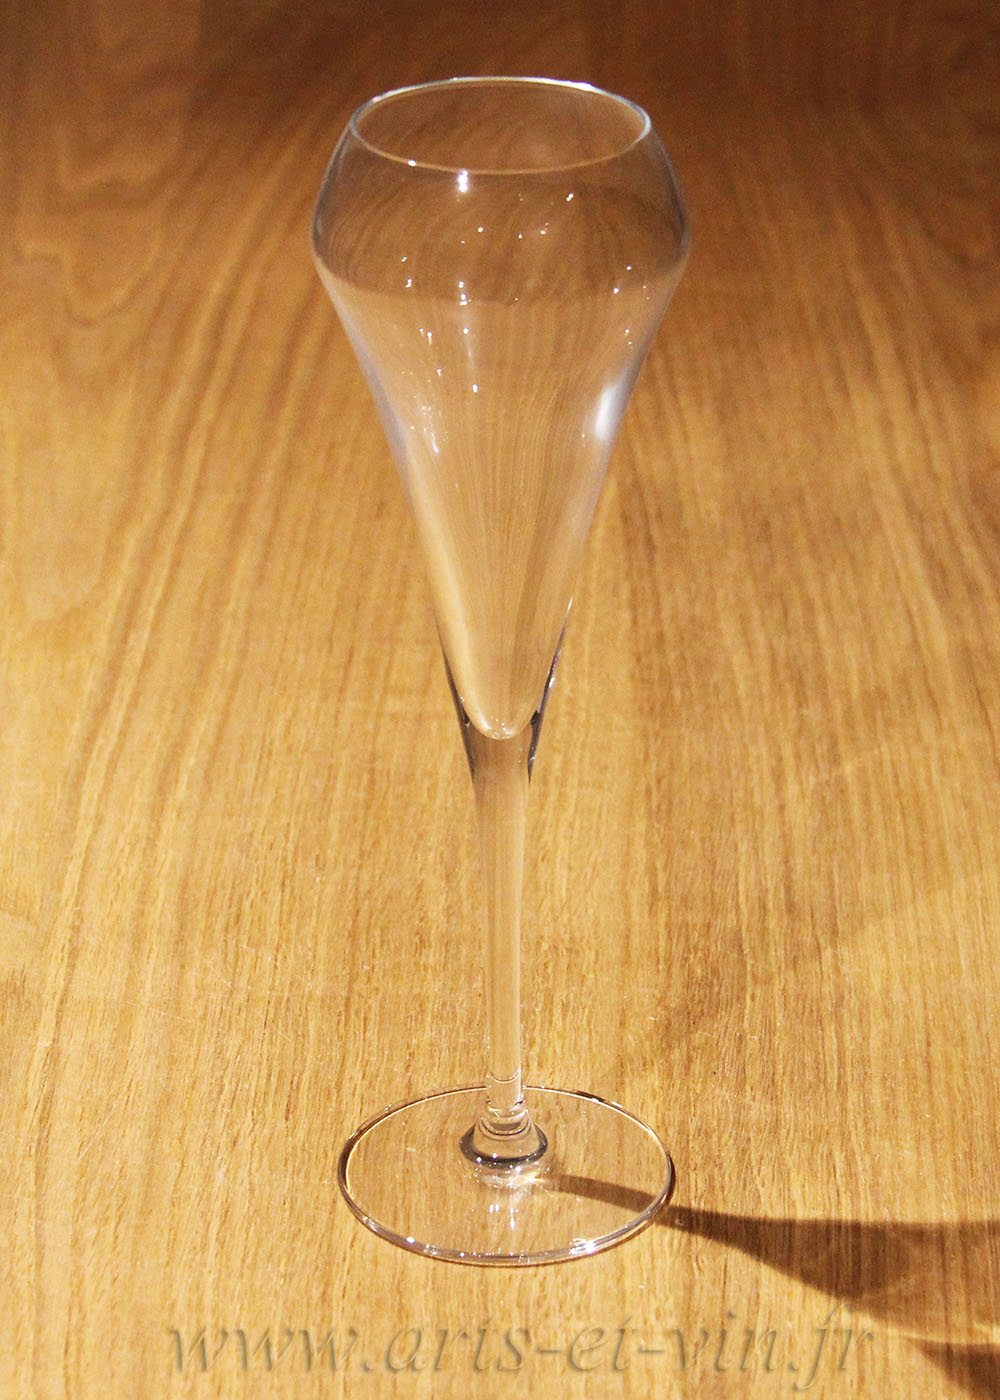 Flûte à champagne en kwarx 20cl - transparent - OPEN UP 